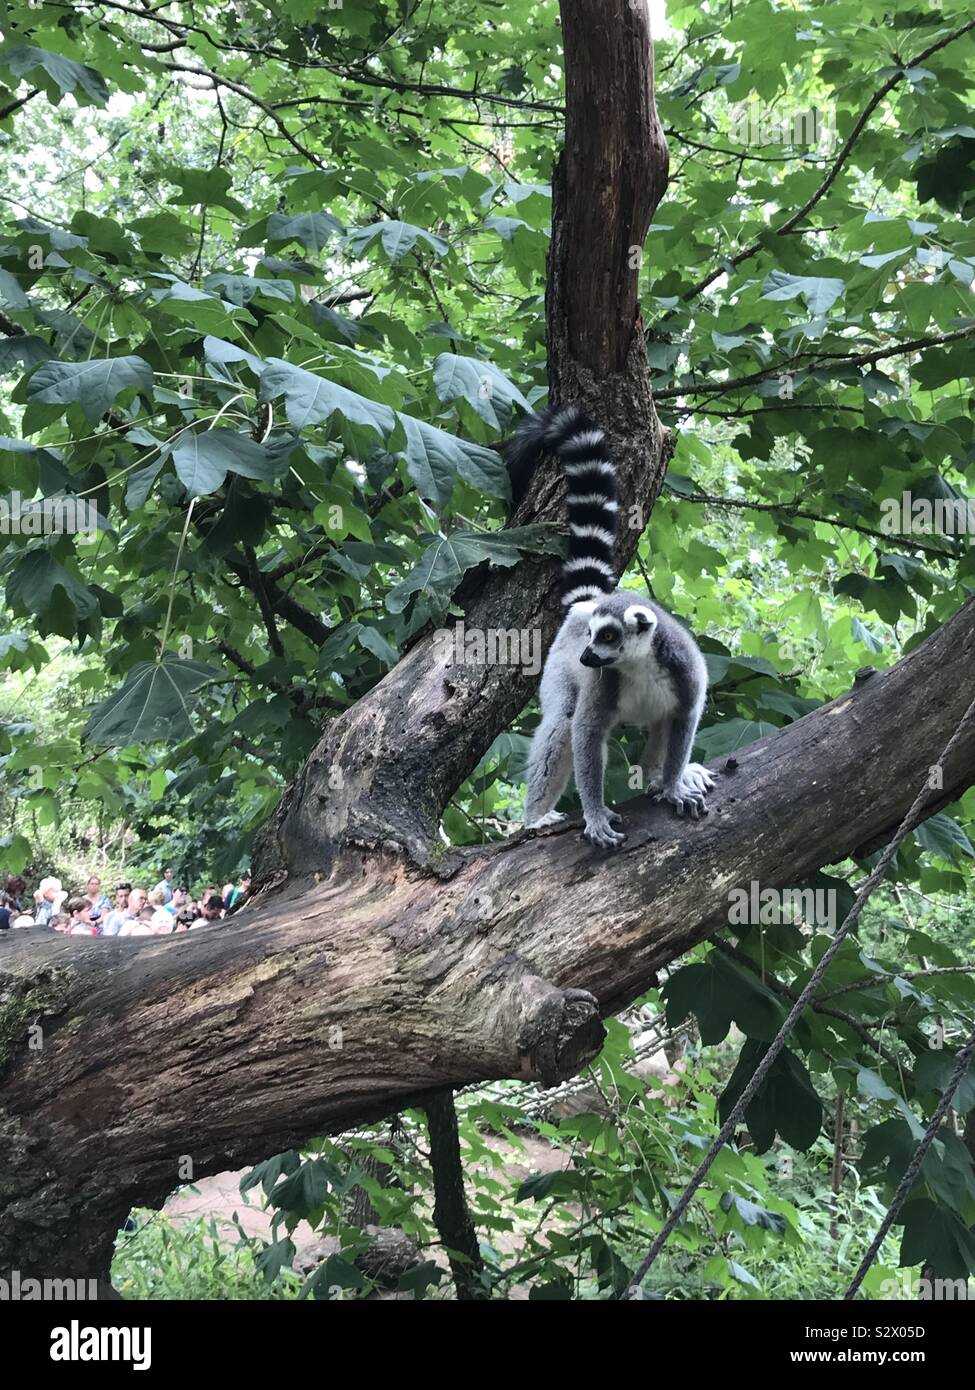 Lemur on a tree in a Dutch zoo Apenheul Stock Photo